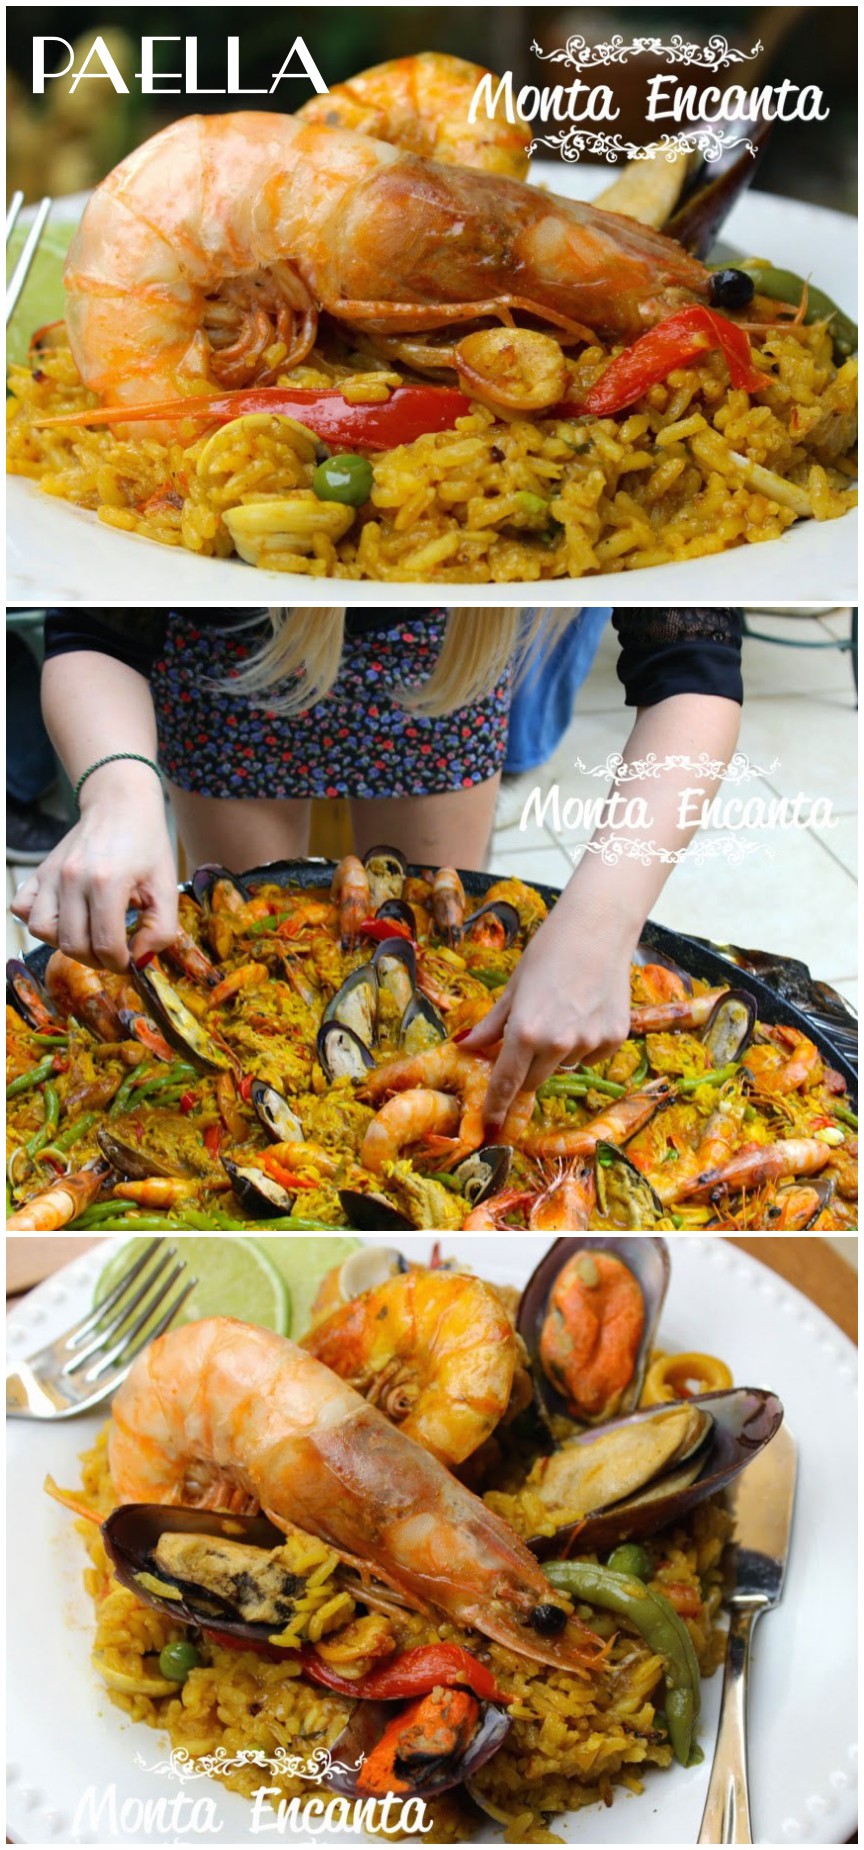 Aprenda a preparar fideuá, prato típico espanhol com frutos do mar, Gastronomia